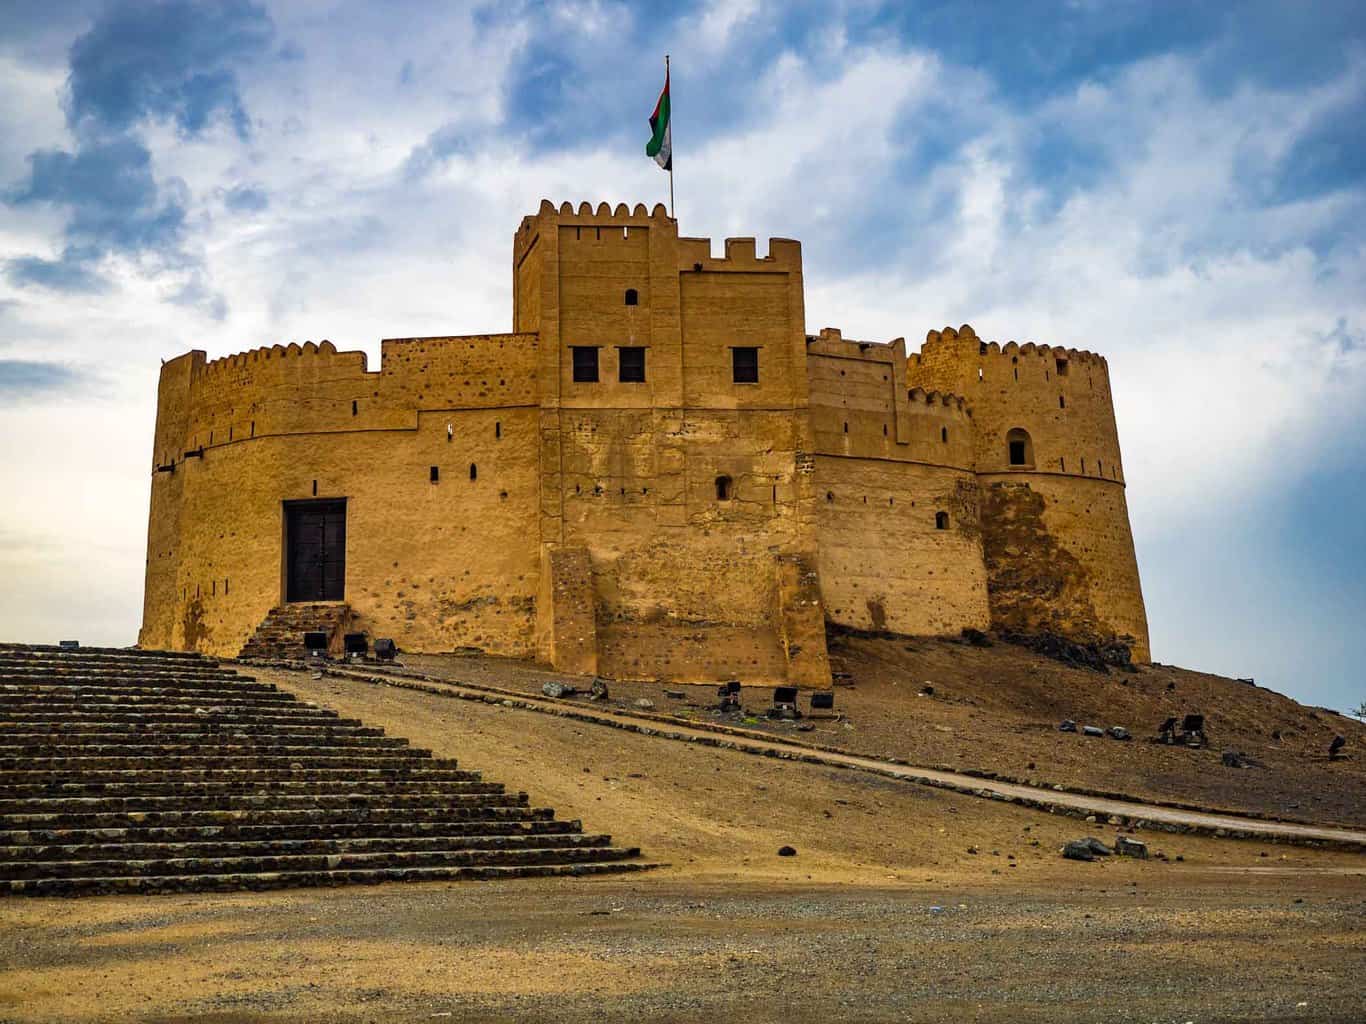 Fujairah Fort in UAE